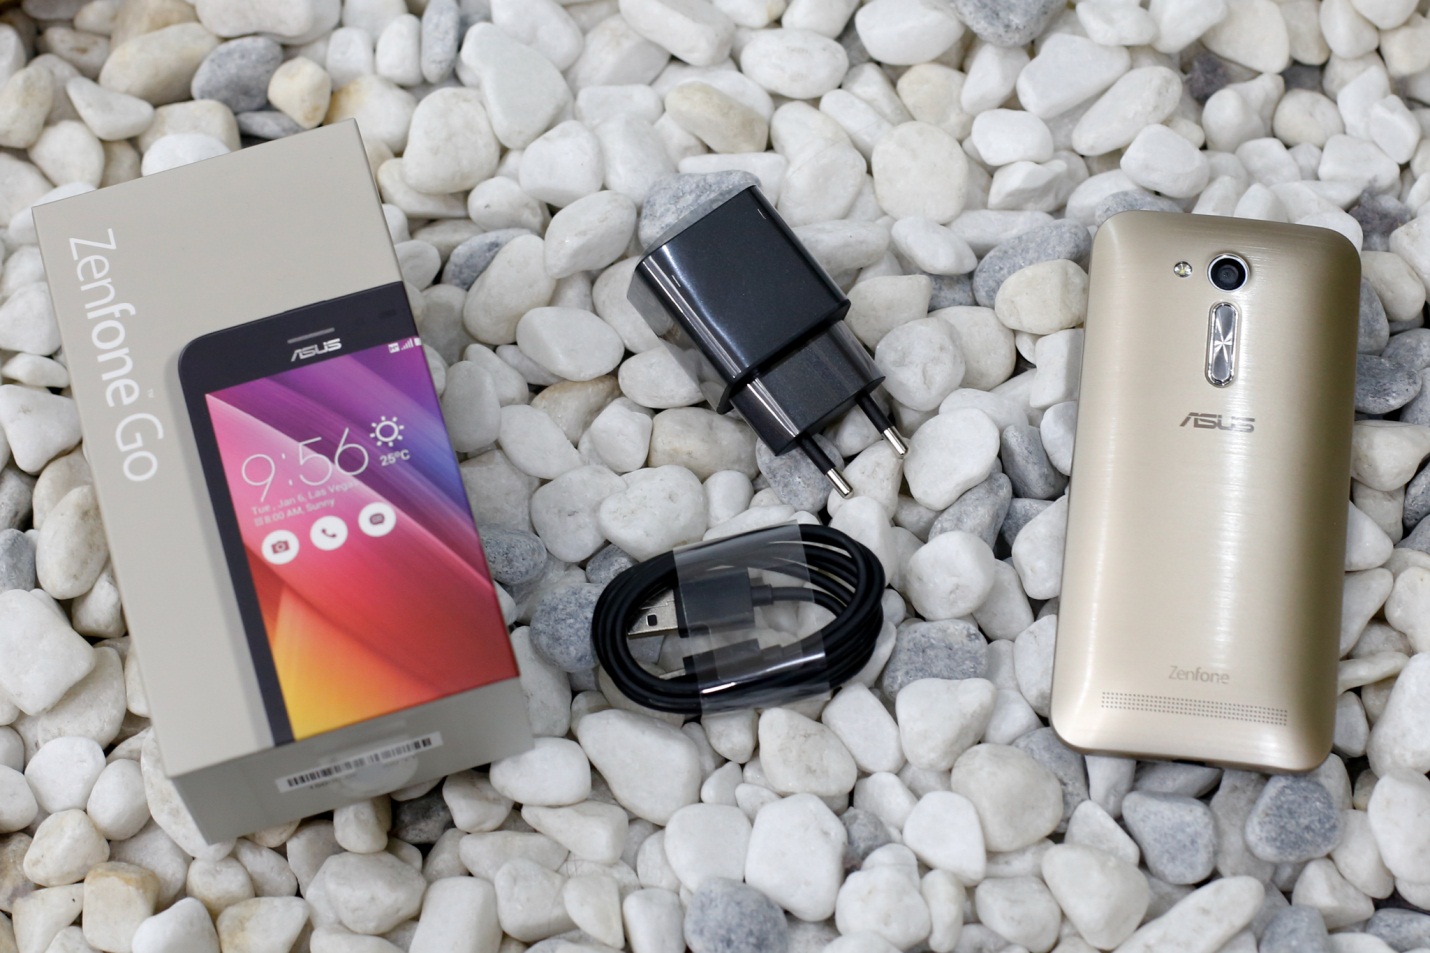 Asus Zenfone Go 4.5 Plus: Quá đẹp và tiện ích cho mức giá hơn 2 triệu đồng - Ảnh 2.